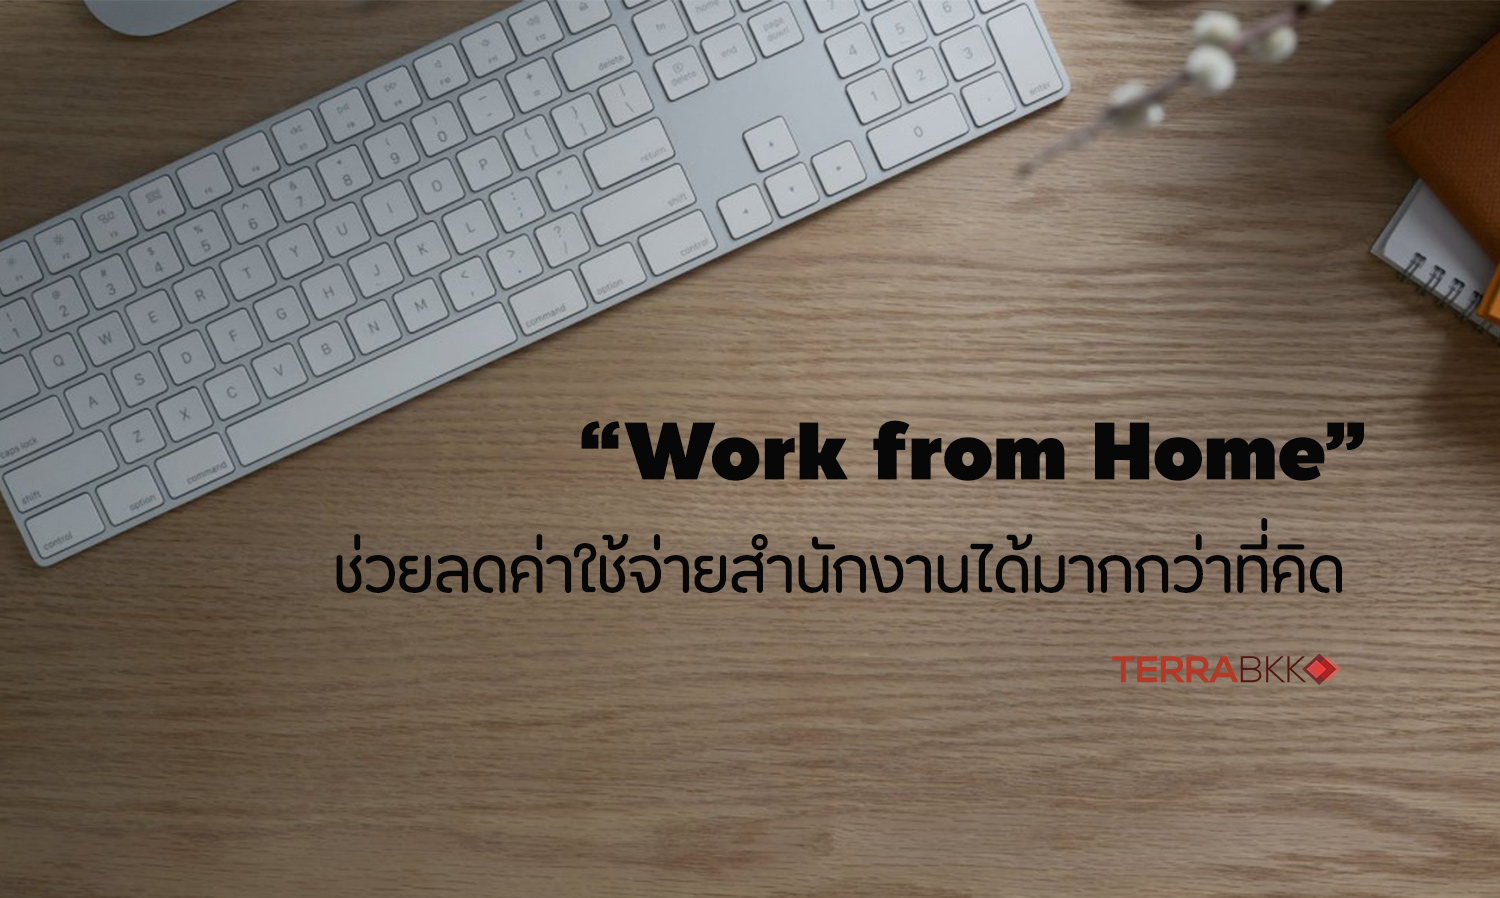 “Work from Home” ช่วยลดค่าใช้จ่ายสำนักงานได้มากกว่าที่คิด 